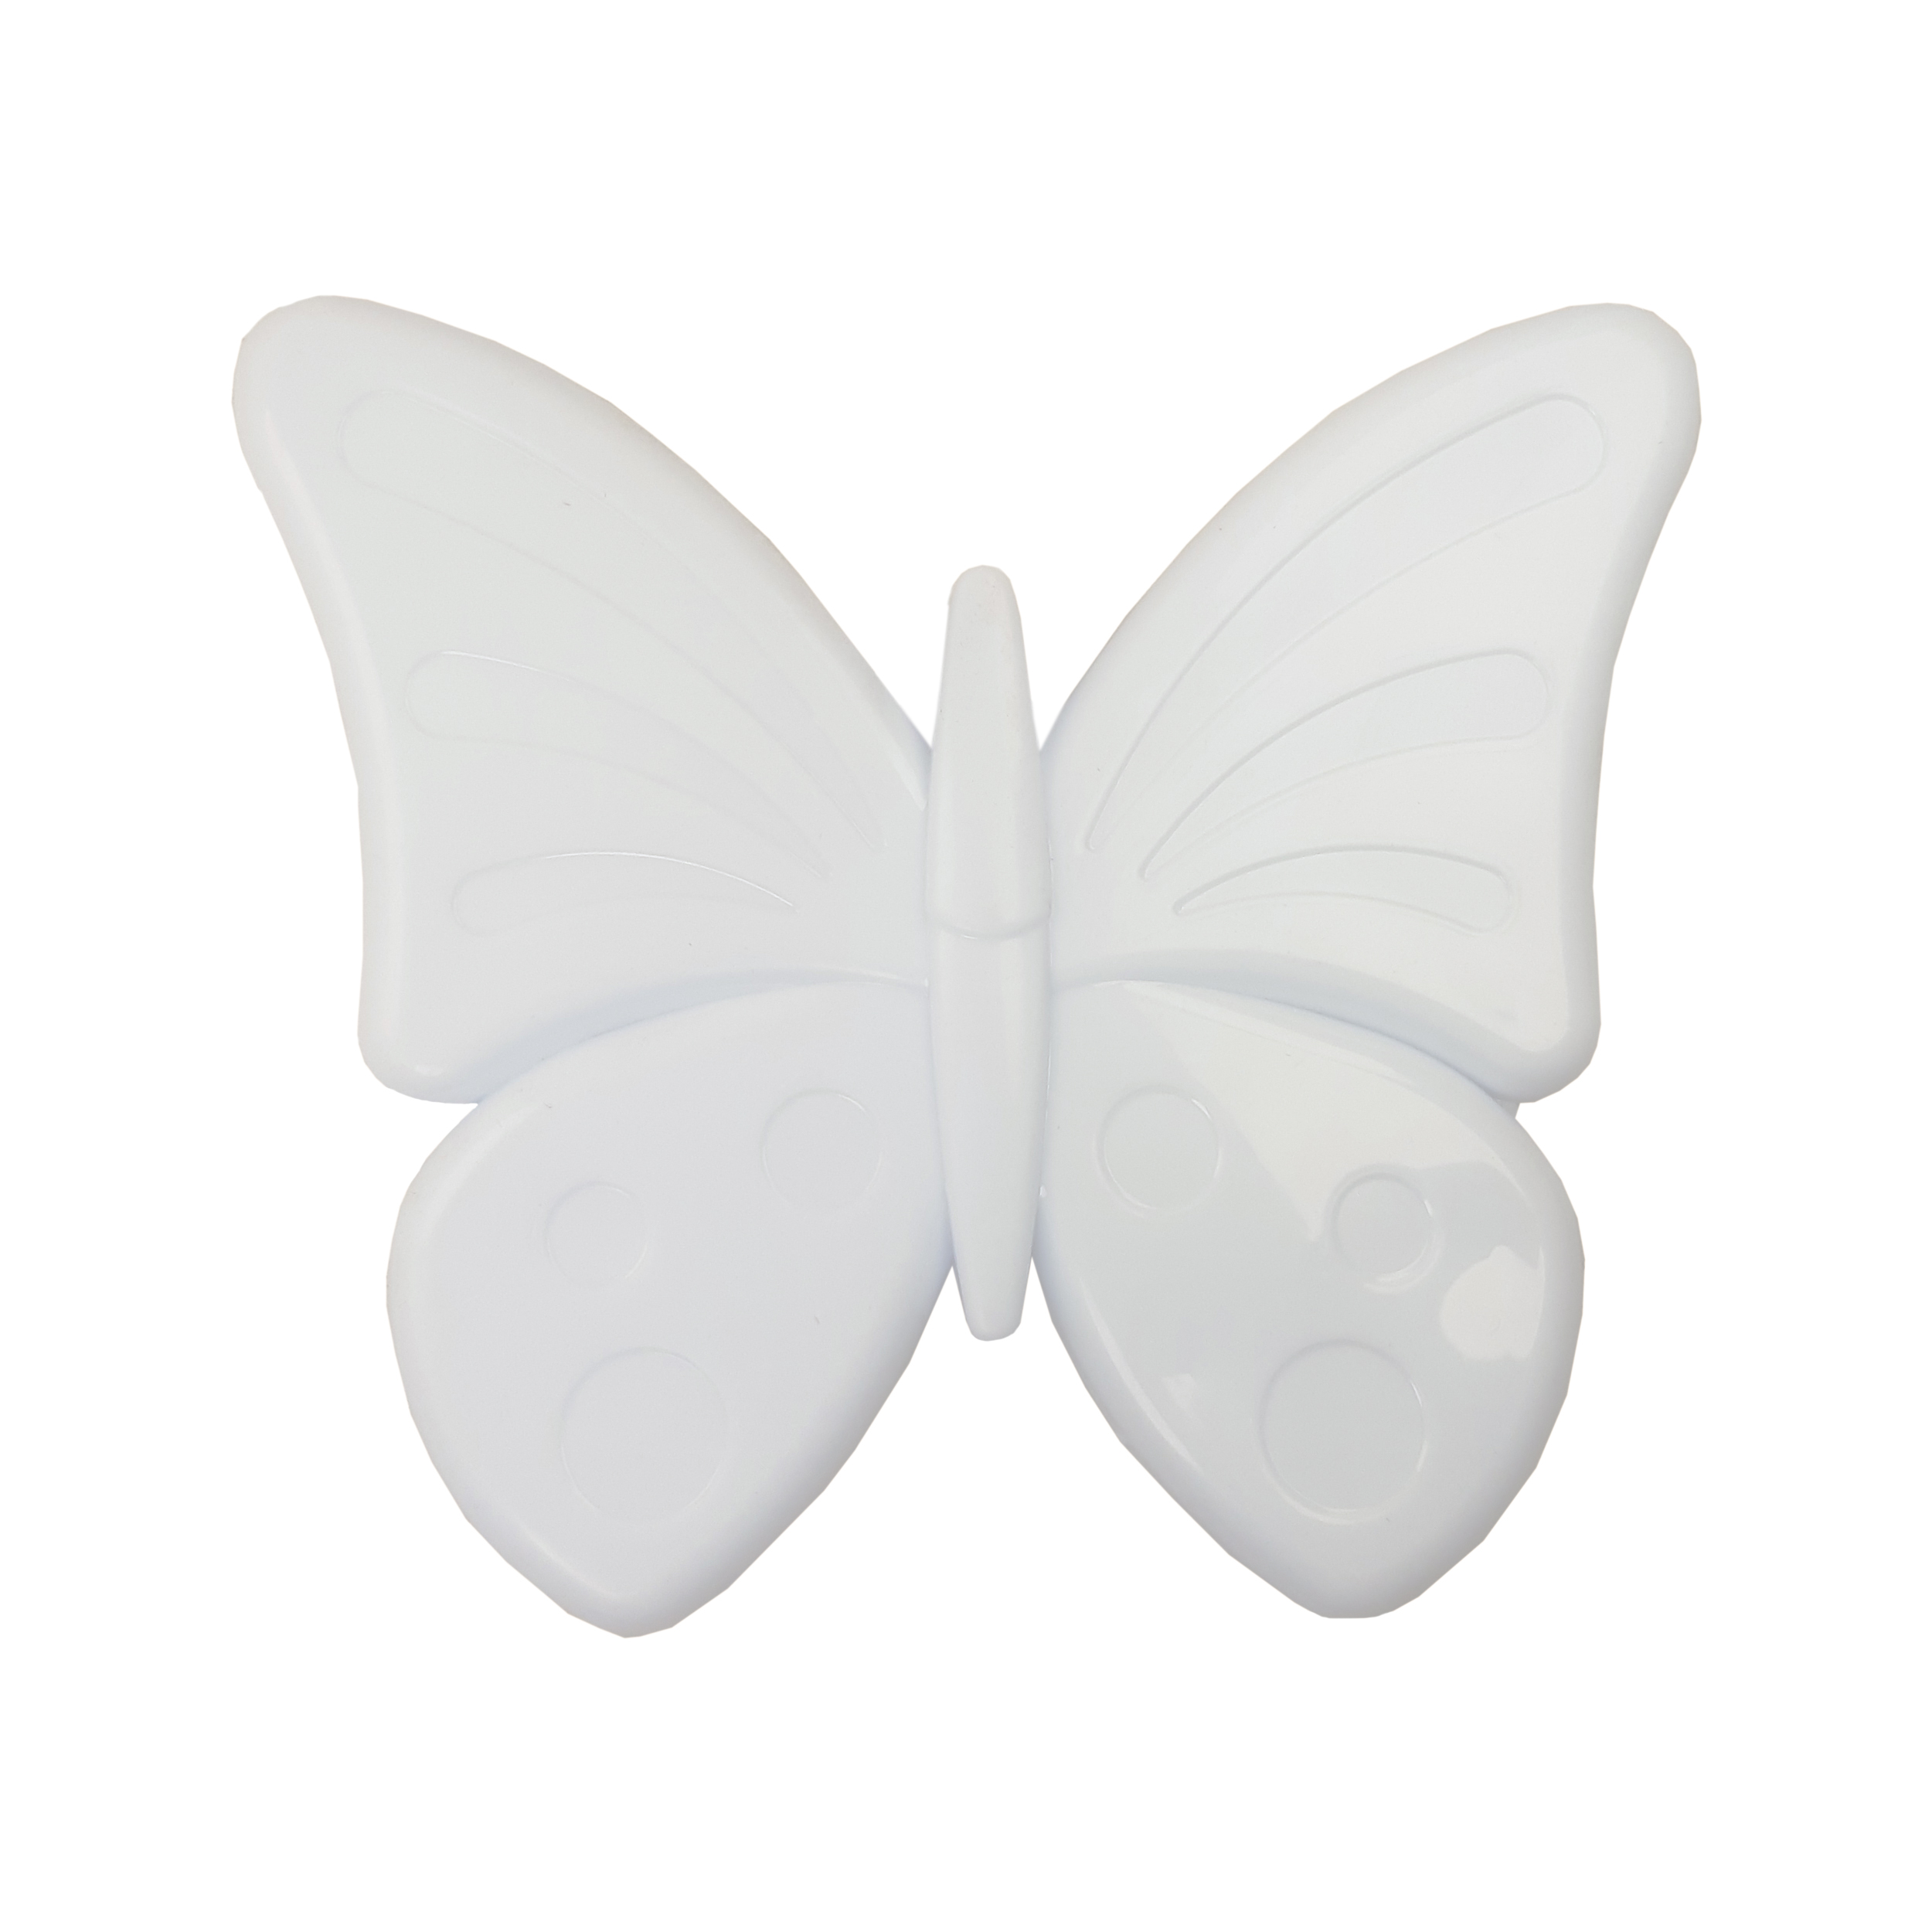 آنتن رومیزی تیوا مدل پروانه